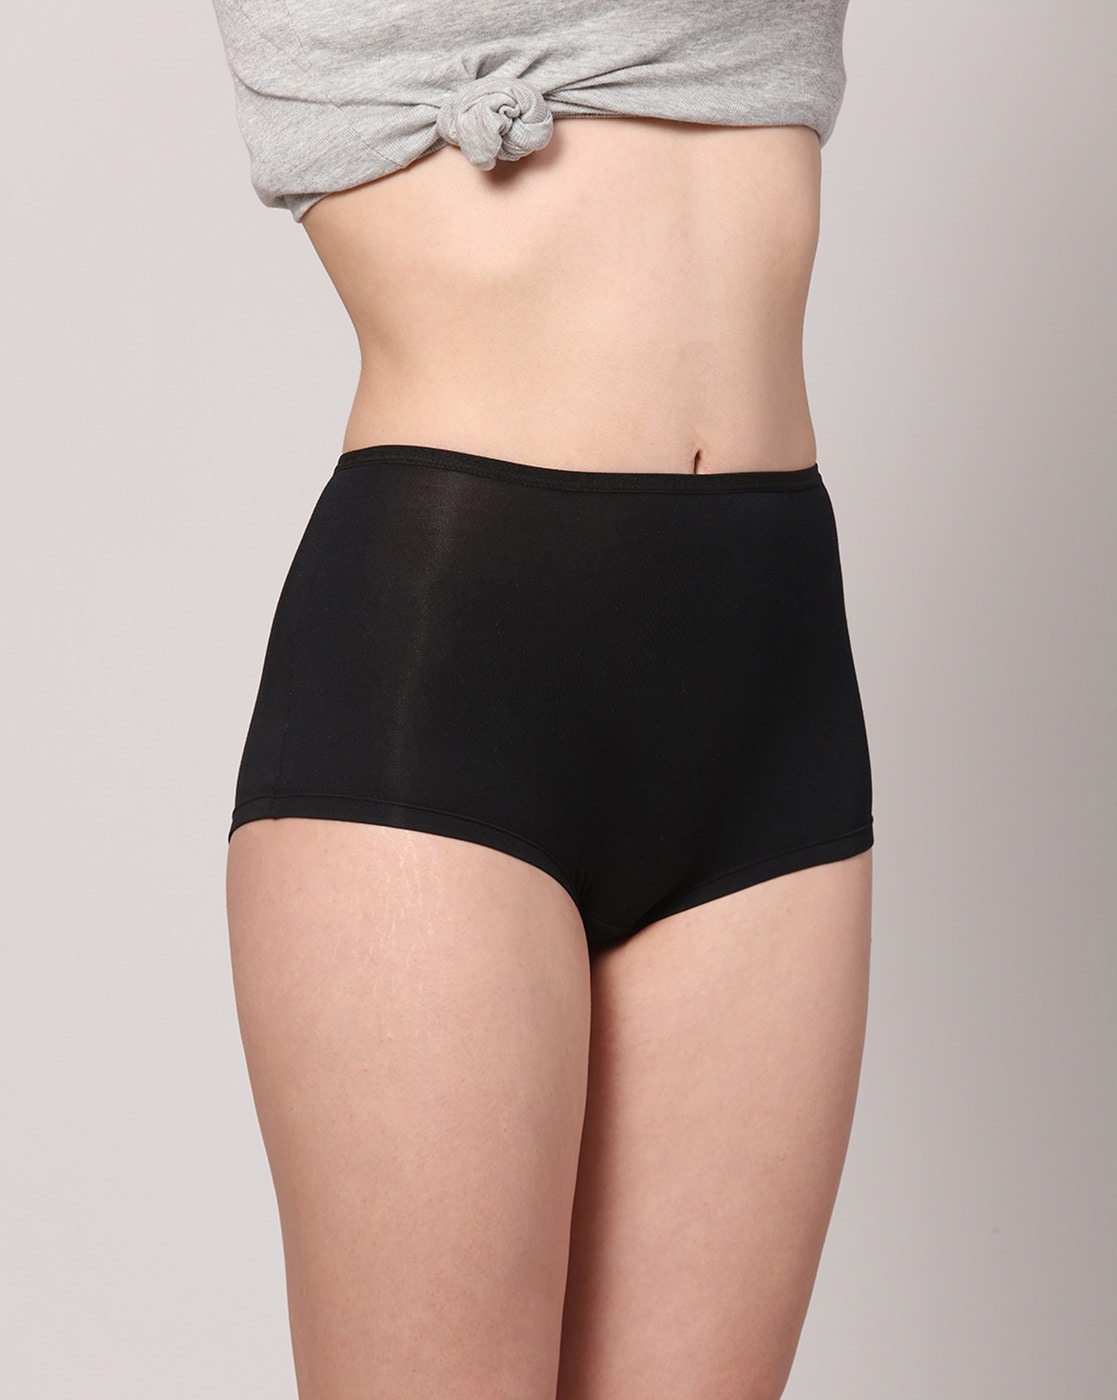 Buy Black Panties for Women by Ashleyandalvis Online